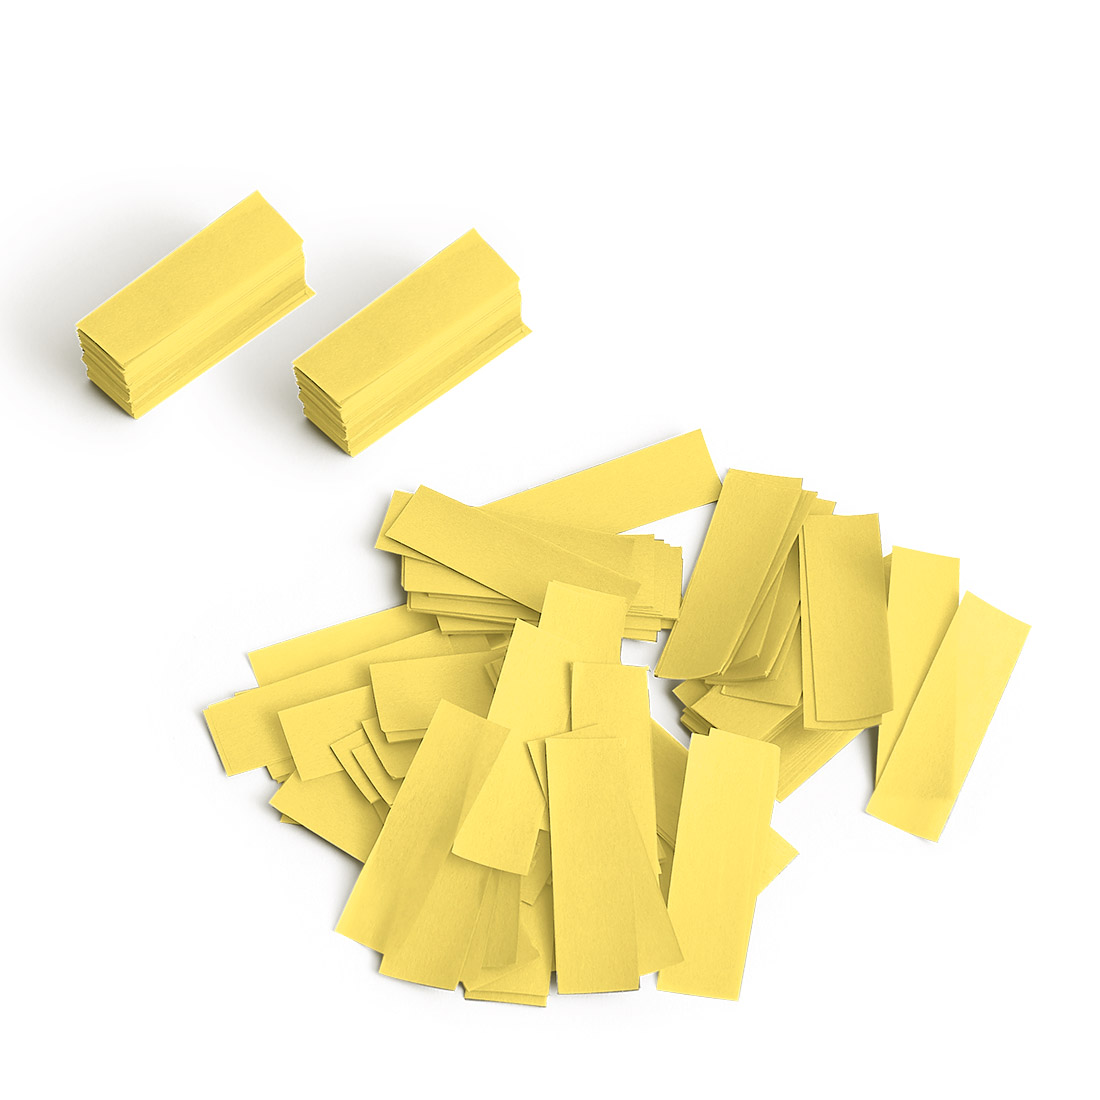 Pro.FX Confetti Yellow